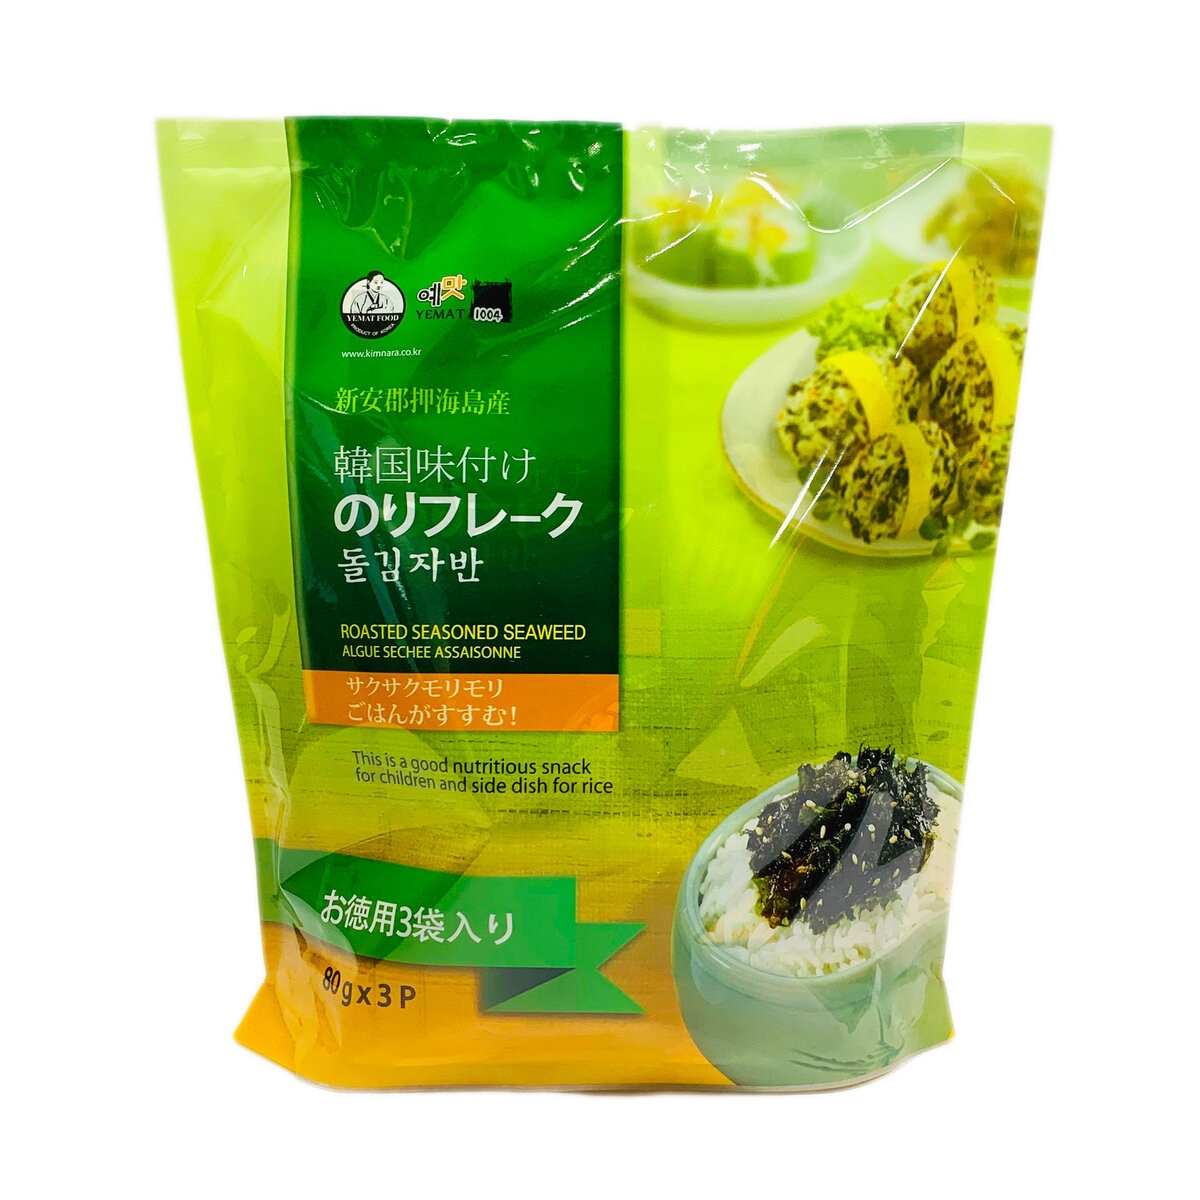 のりフレーク 韓国海苔 コストコ - その他 加工食品